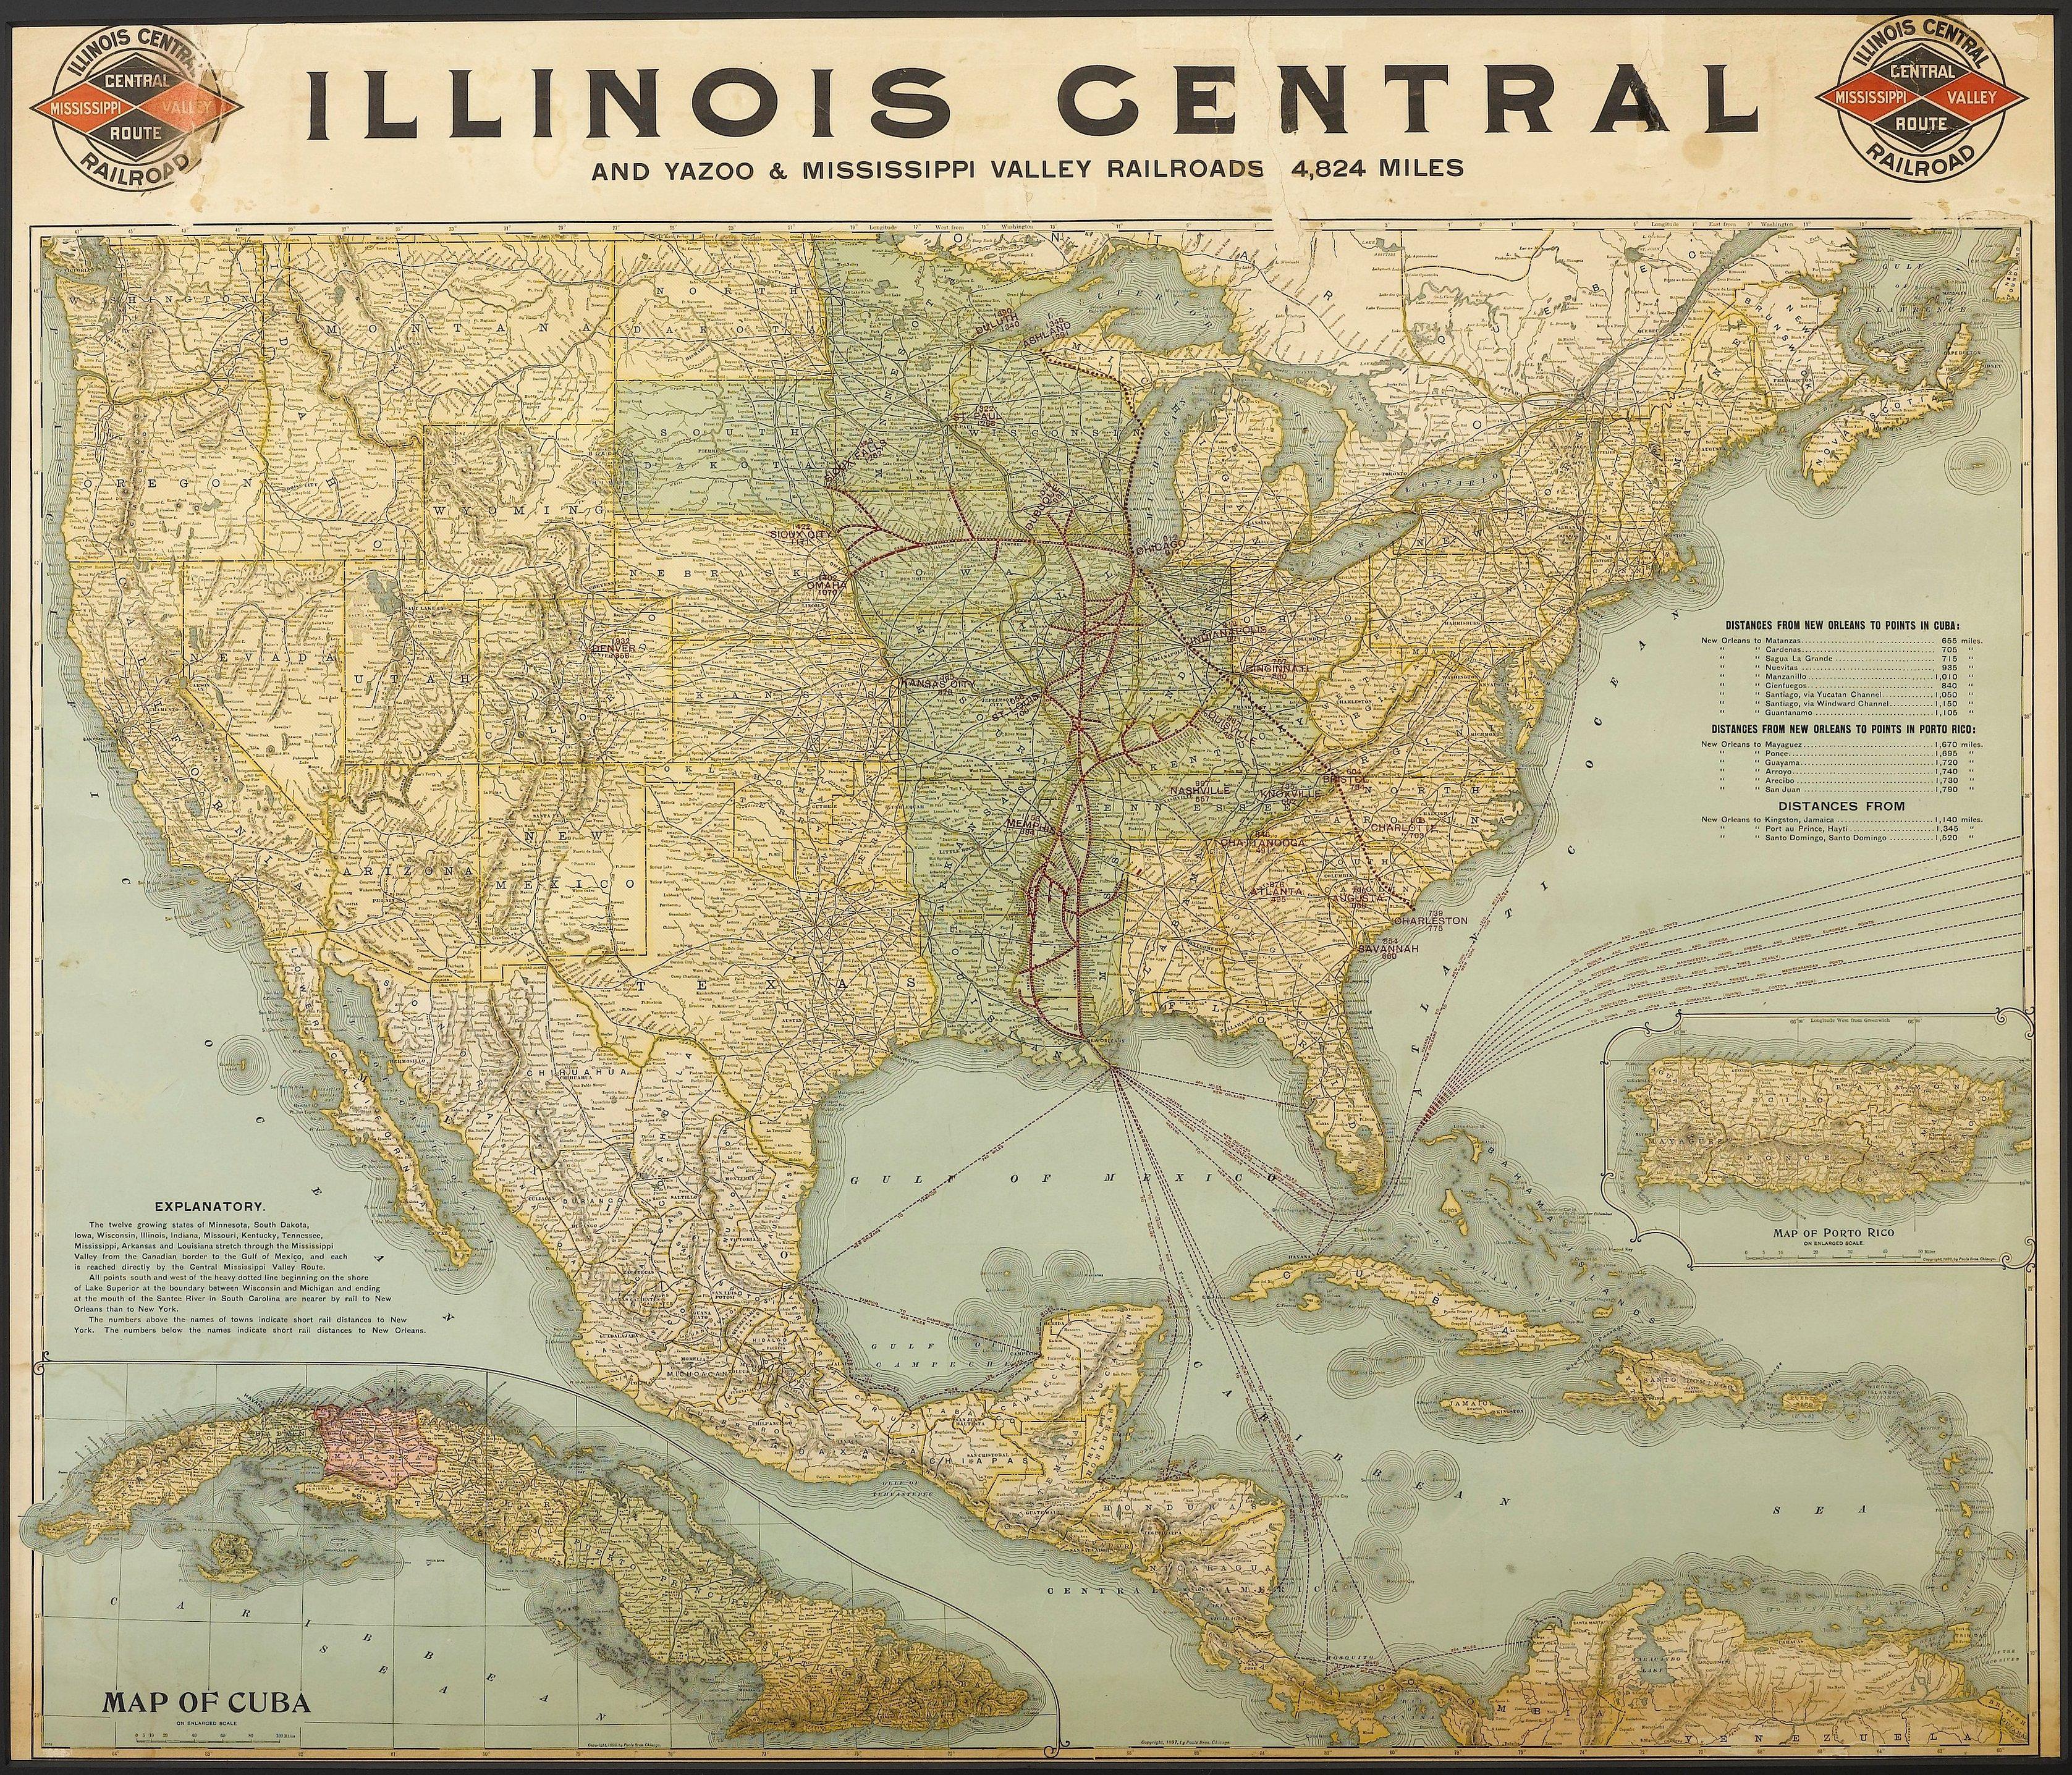 Dies ist eine Eisenbahnkarte von 1899 der Illinois Central und der Yazoo and Mississippi Valley Railroads, herausgegeben von den Gebrüdern Poole. Die Karte zeigt das gesamte Gebiet der Vereinigten Staaten vom Atlantik bis zum Pazifik, den Golf von